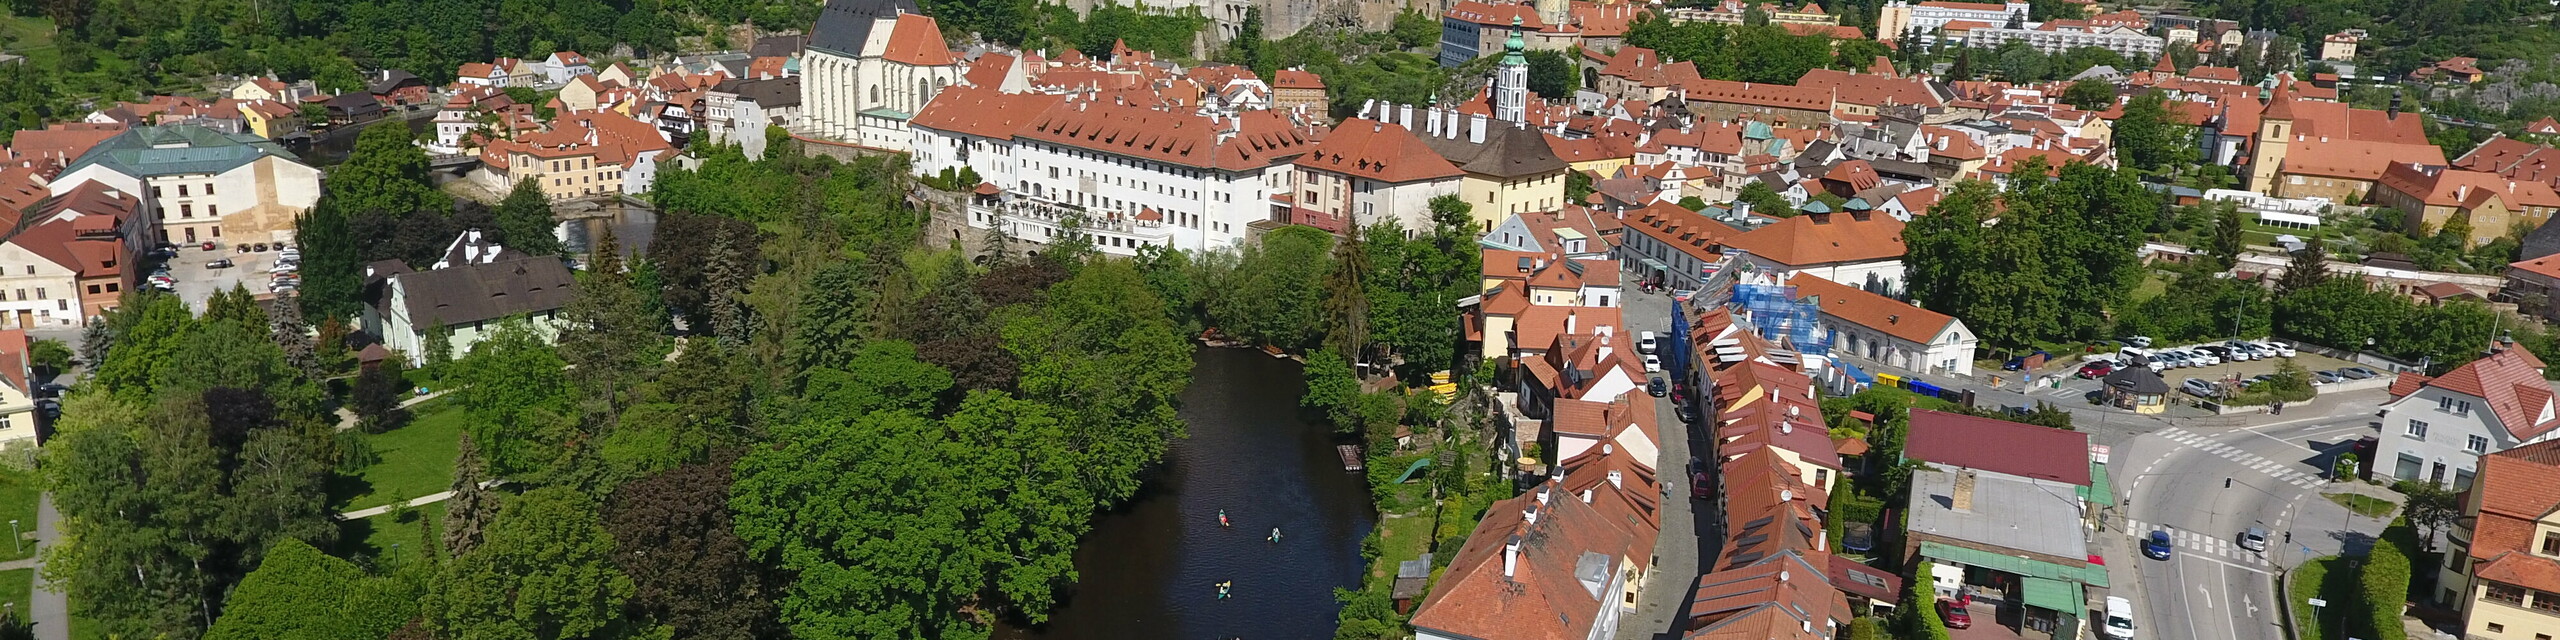 Pohled z výšky na historické centrum Českého Krumlova